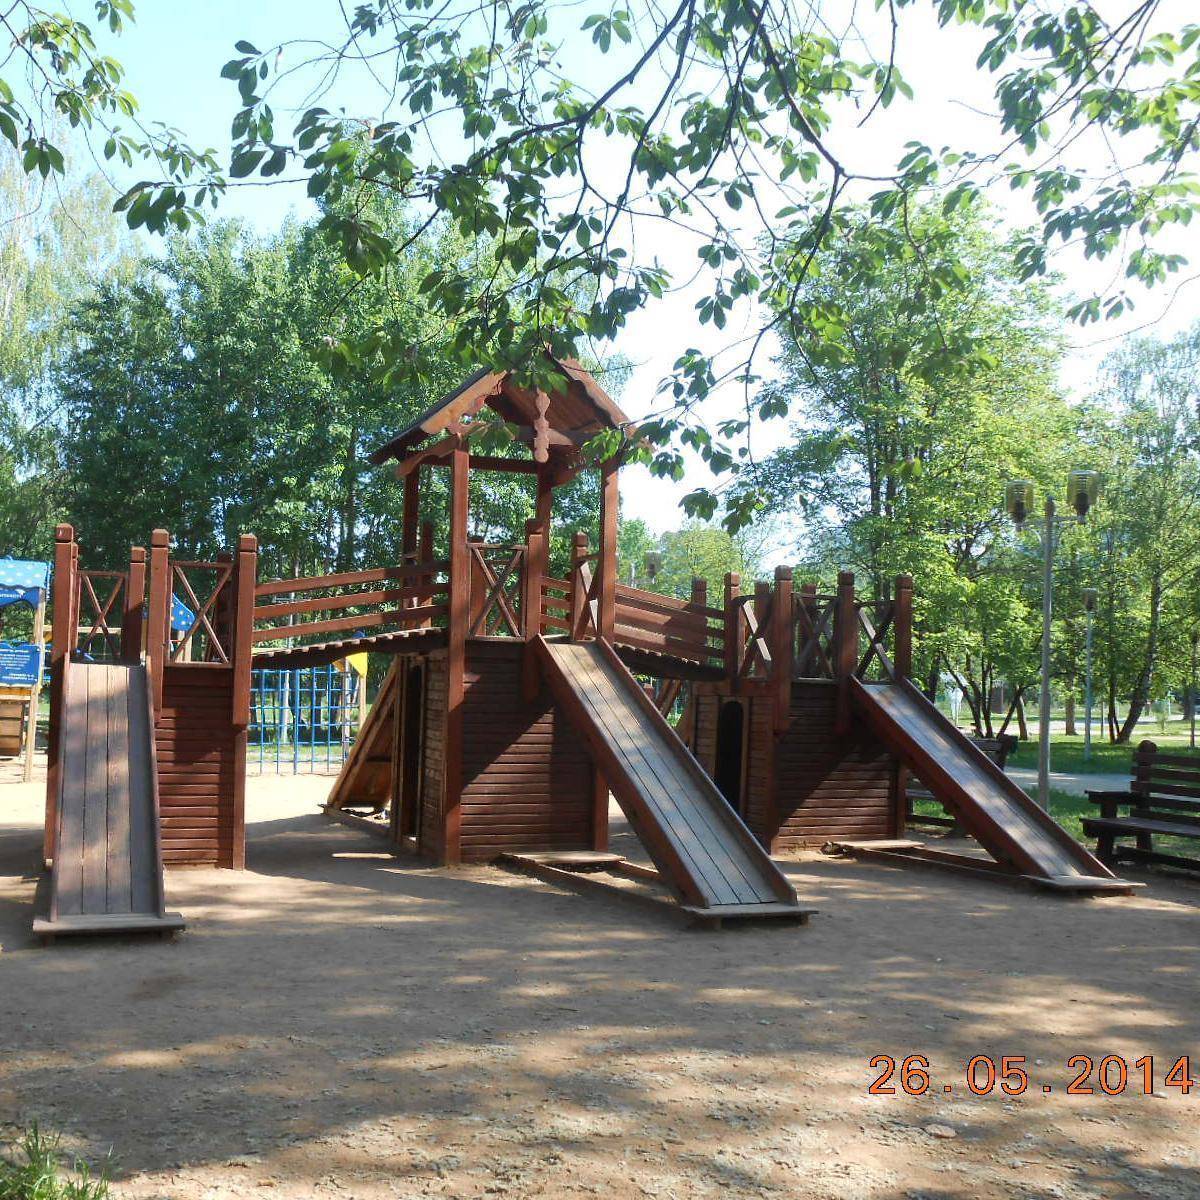 Фото: Детская игровая площадка №12, Битцевский лес рядом с Сумским проездом